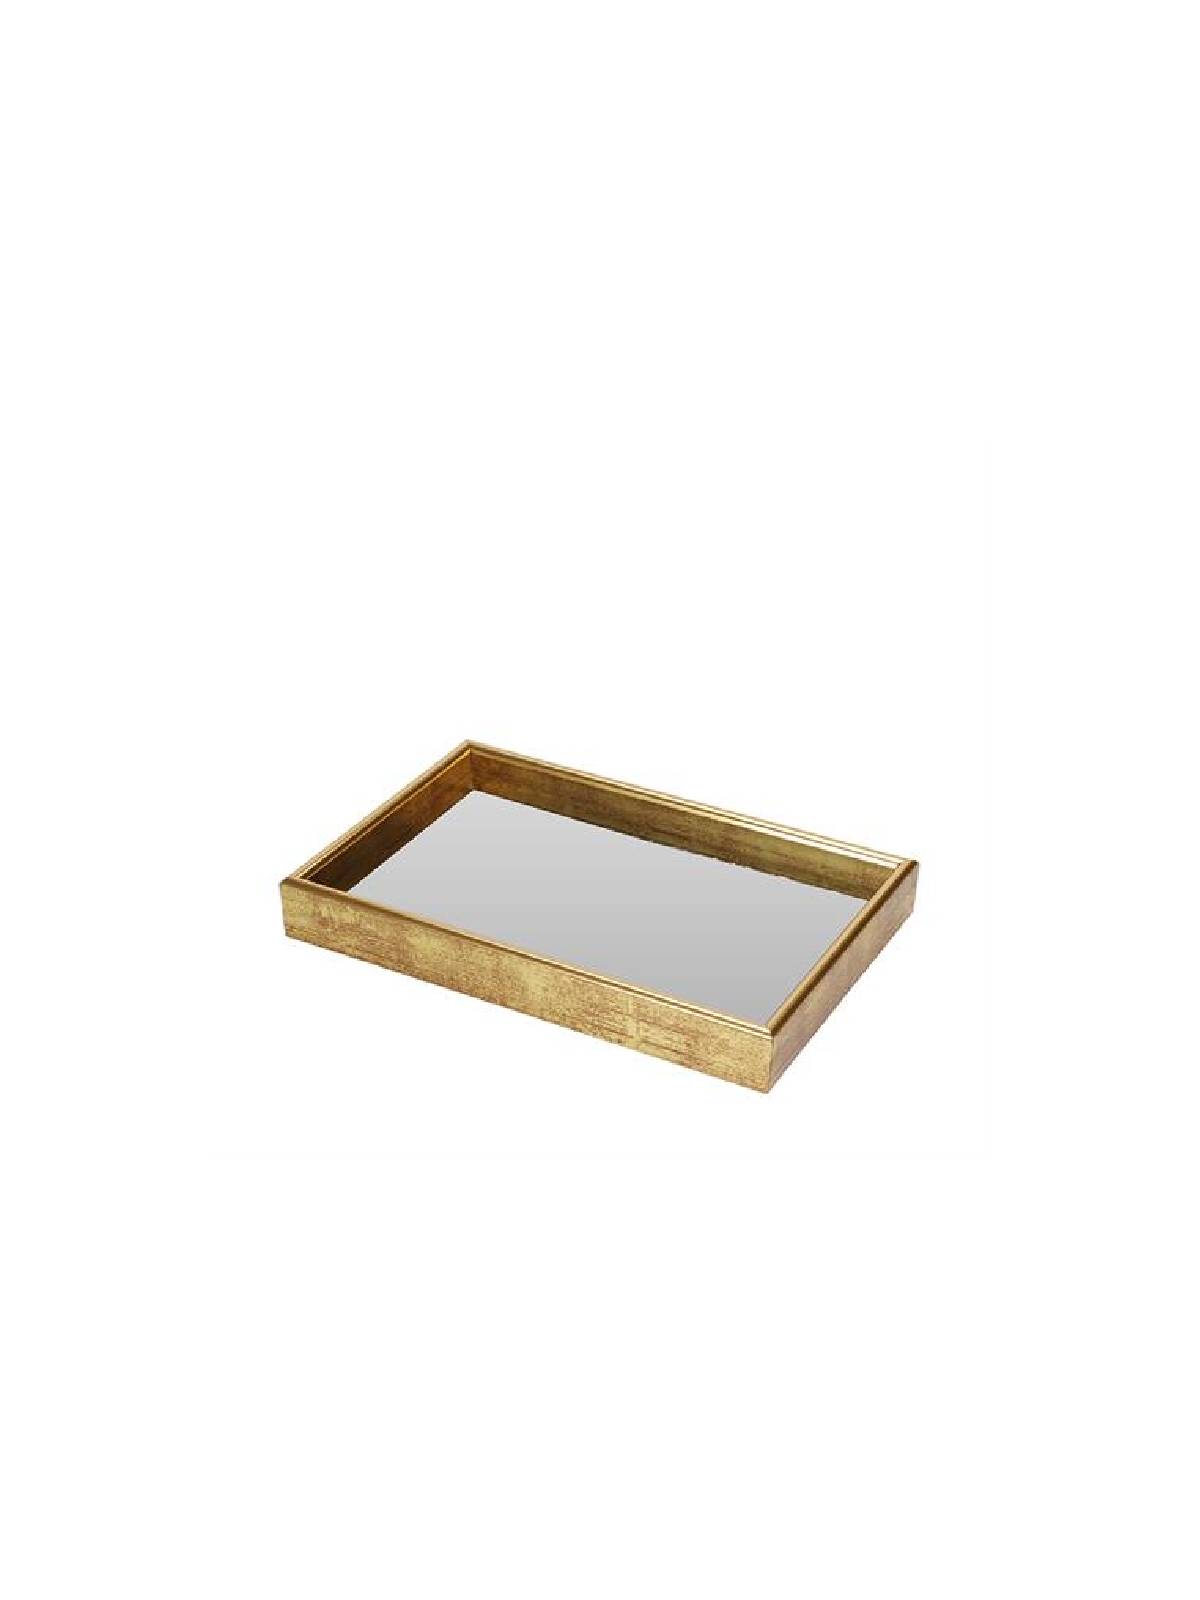 Πλαστικός δίσκος με καθρέπτη χρυσός αντικέ